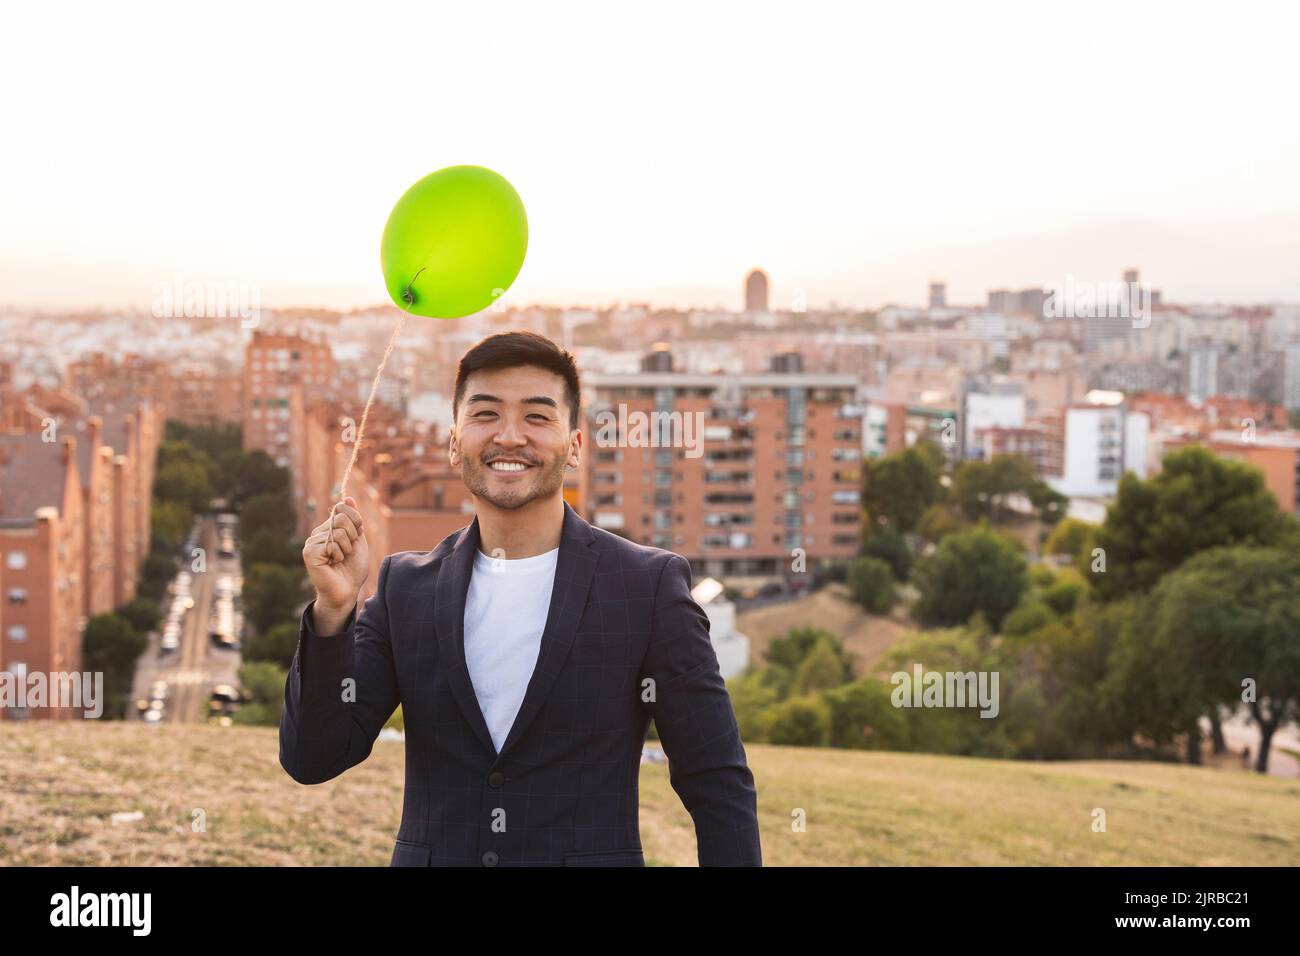 Glücklicher junger Geschäftsmann mit einem grünen Ballon, der auf einem Hügel steht Stockfoto